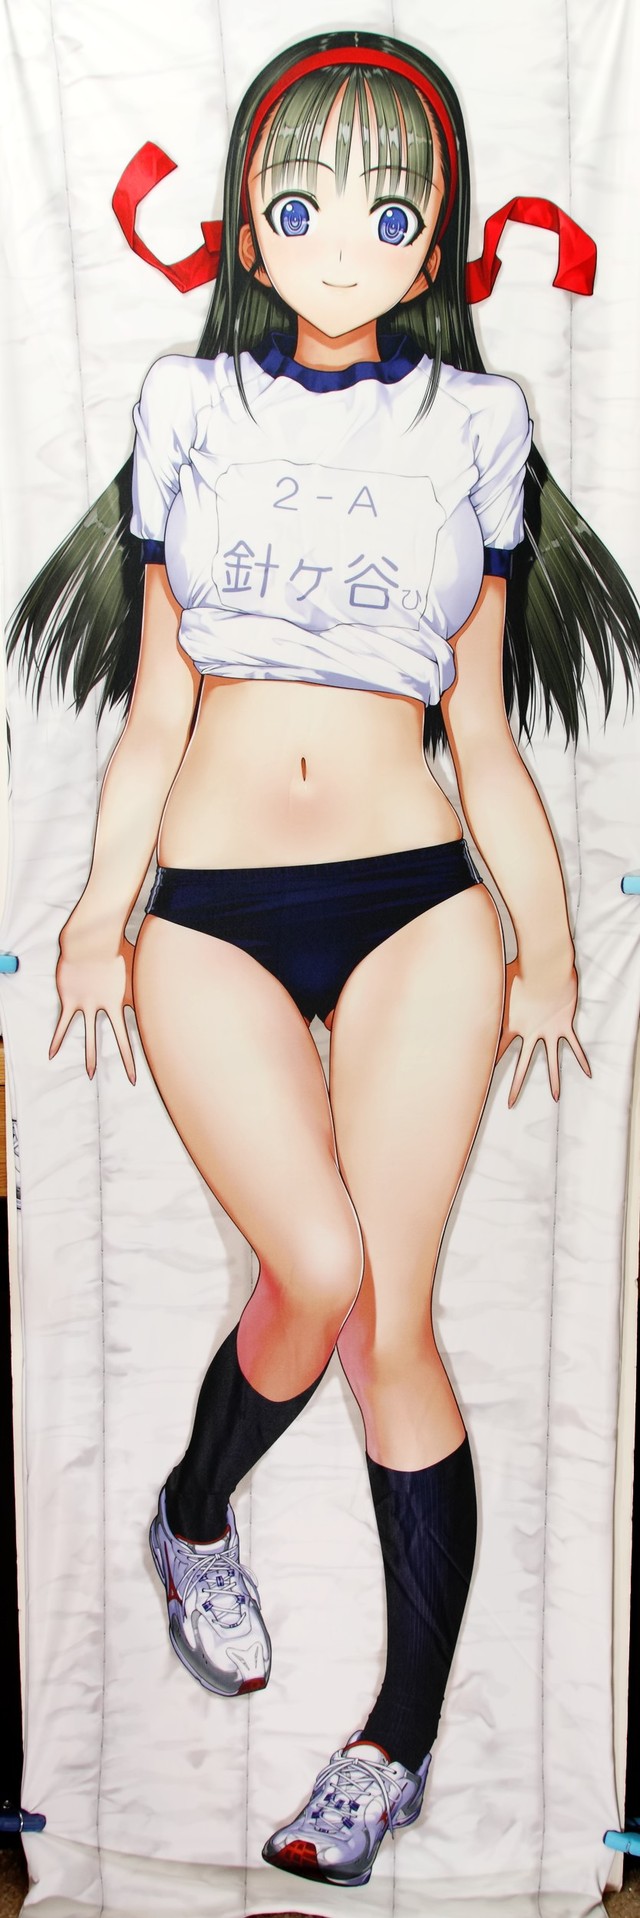 hentai pillow art review from nsfw hinata dakimakura nakaba harigaya reimei